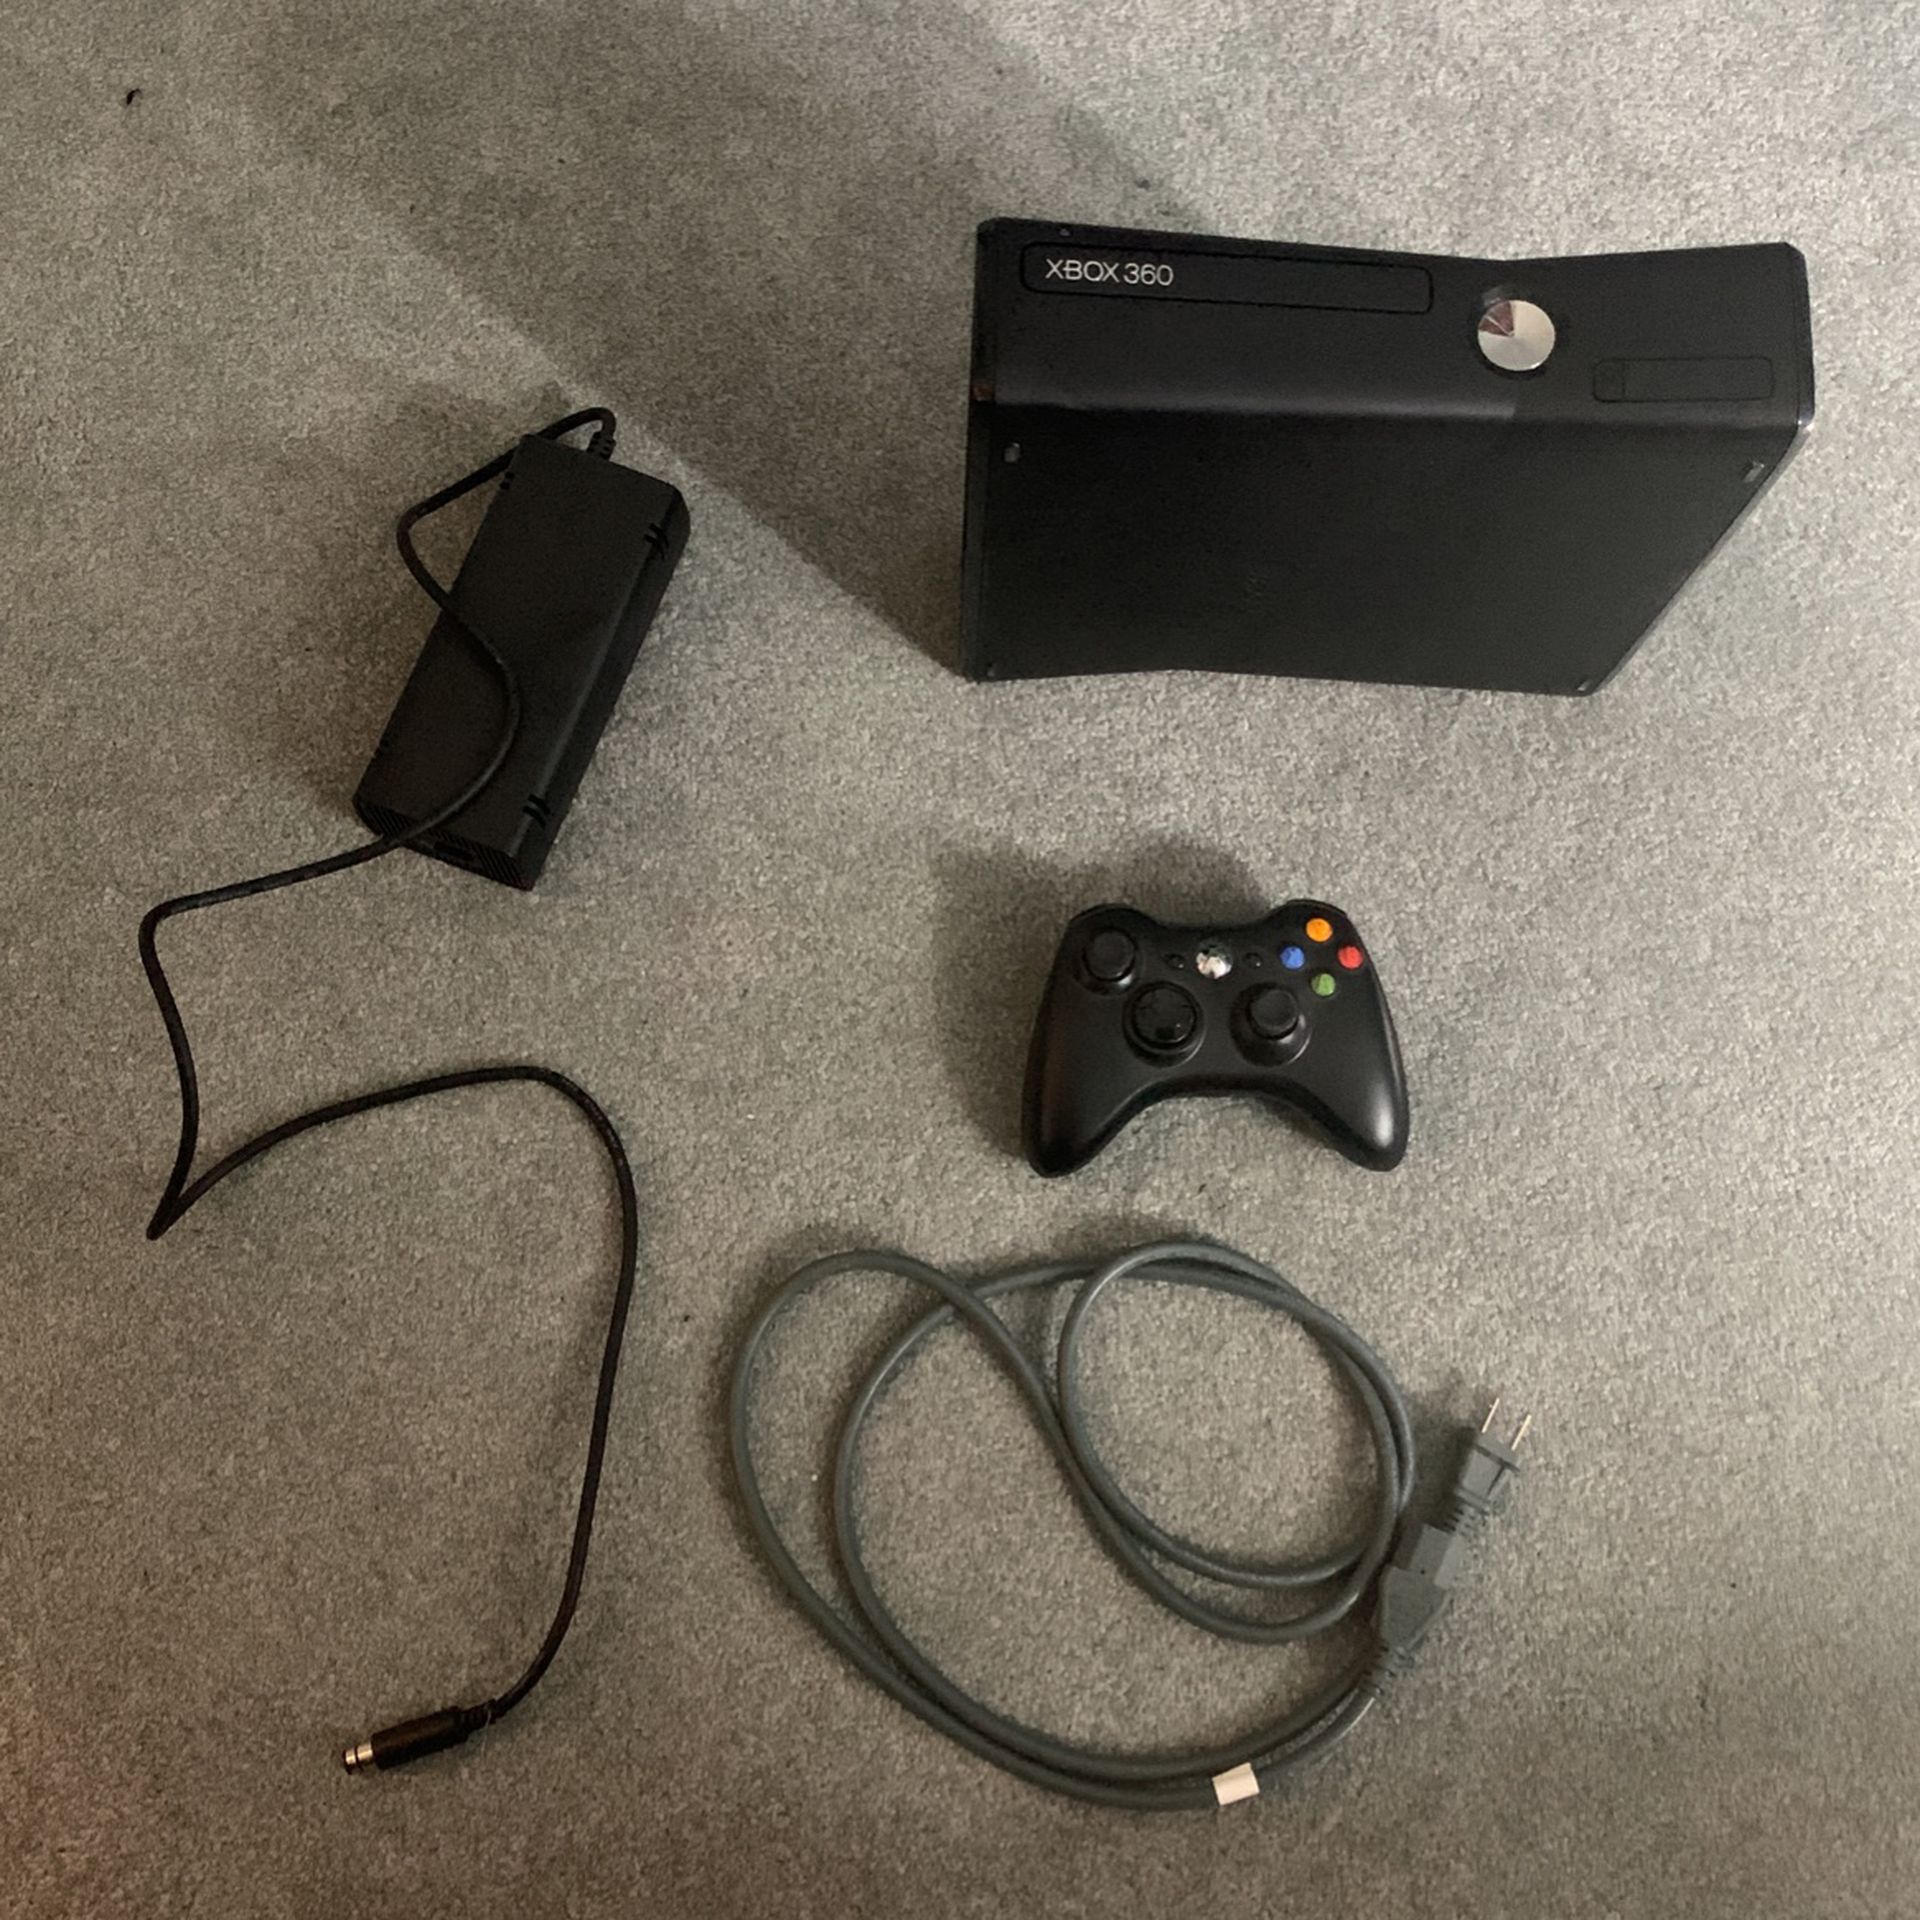 Xbox 360 S + Controller + Power Cord